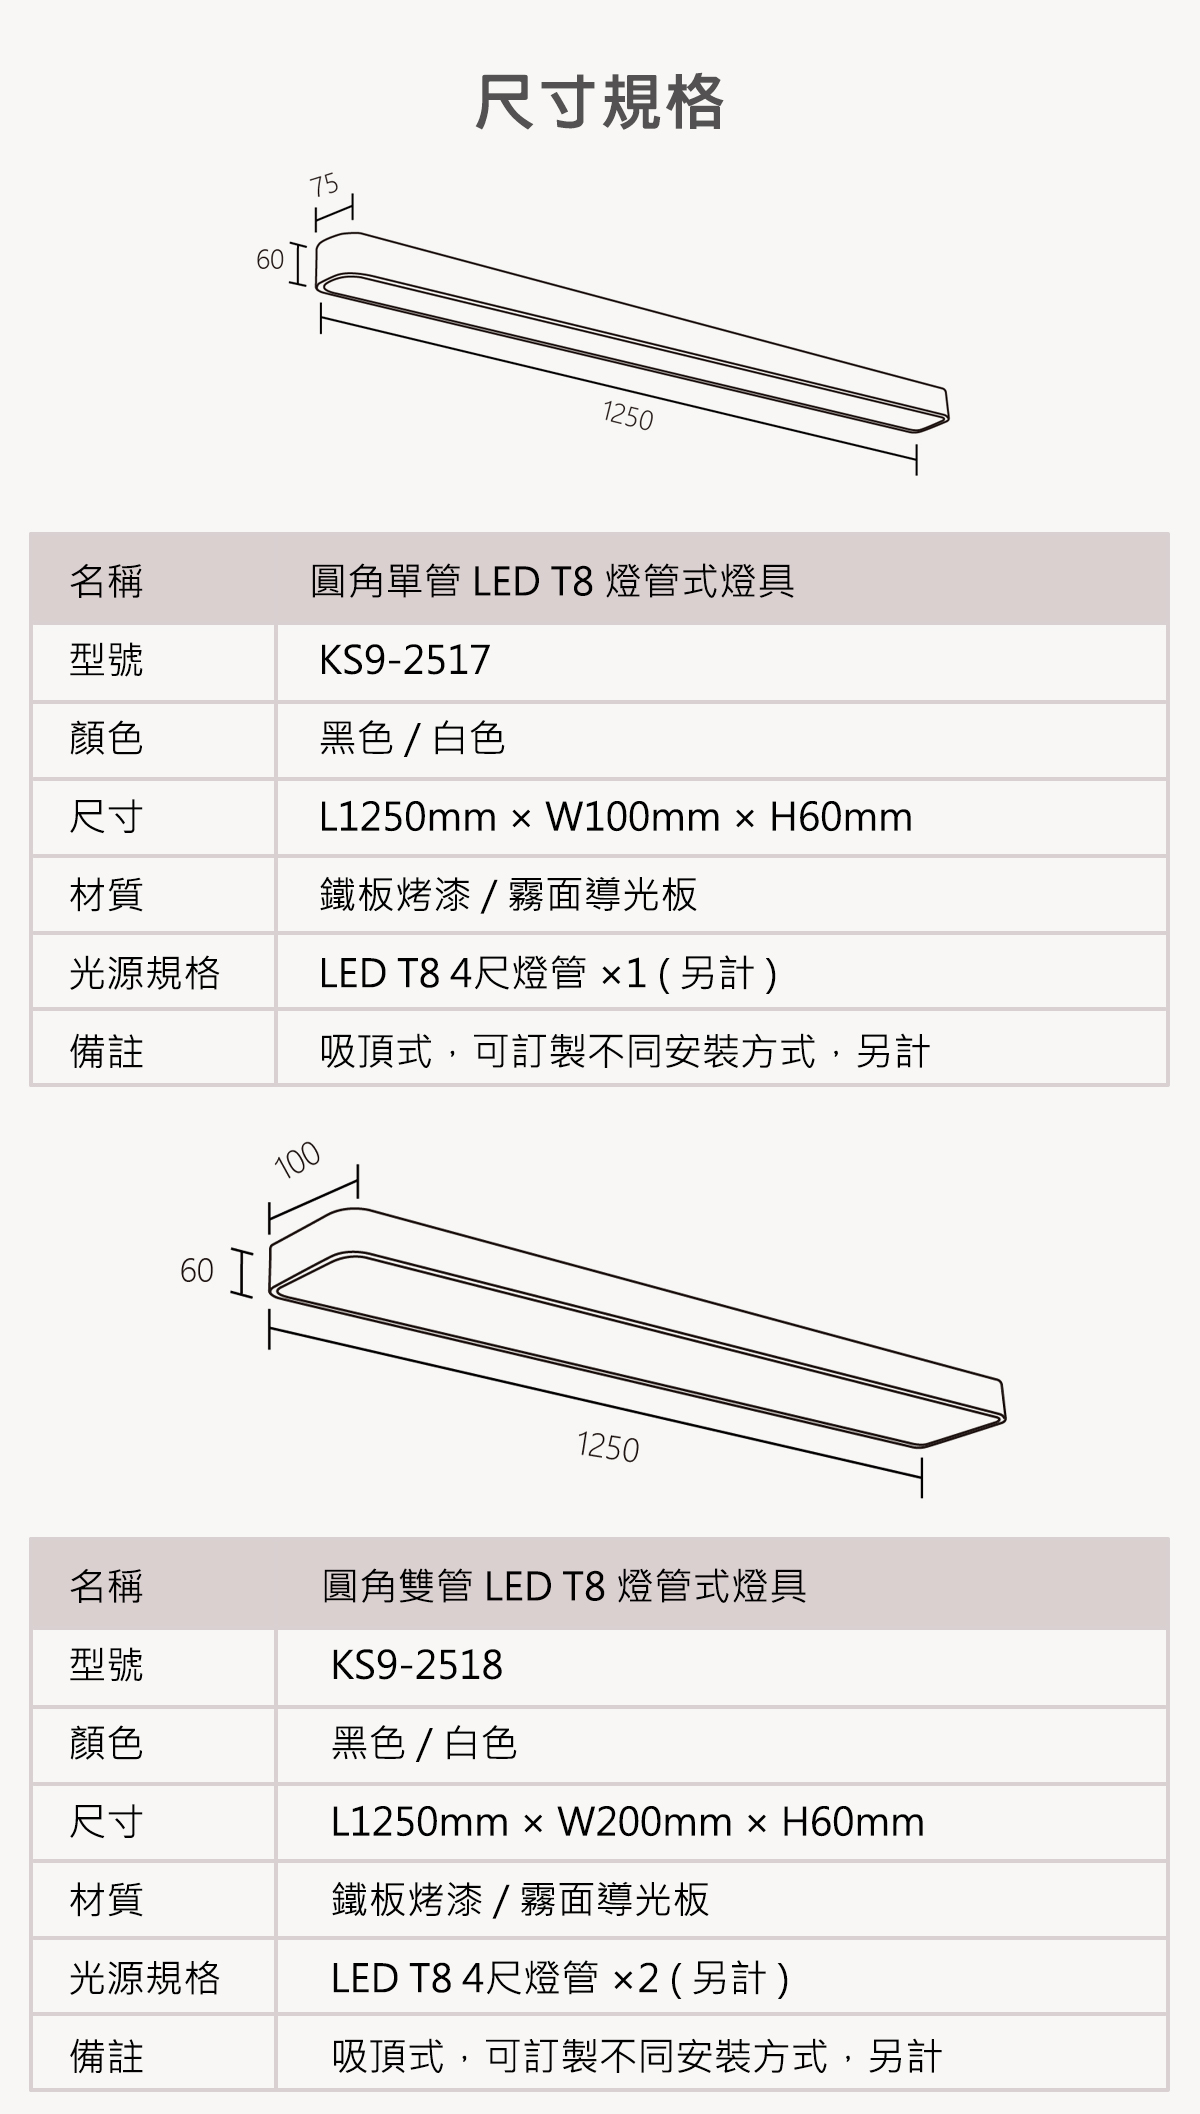 【KAO'S】LED 圓角T8燈管式燈具 單管/雙管 須搭配LED T8 燈管(另計)